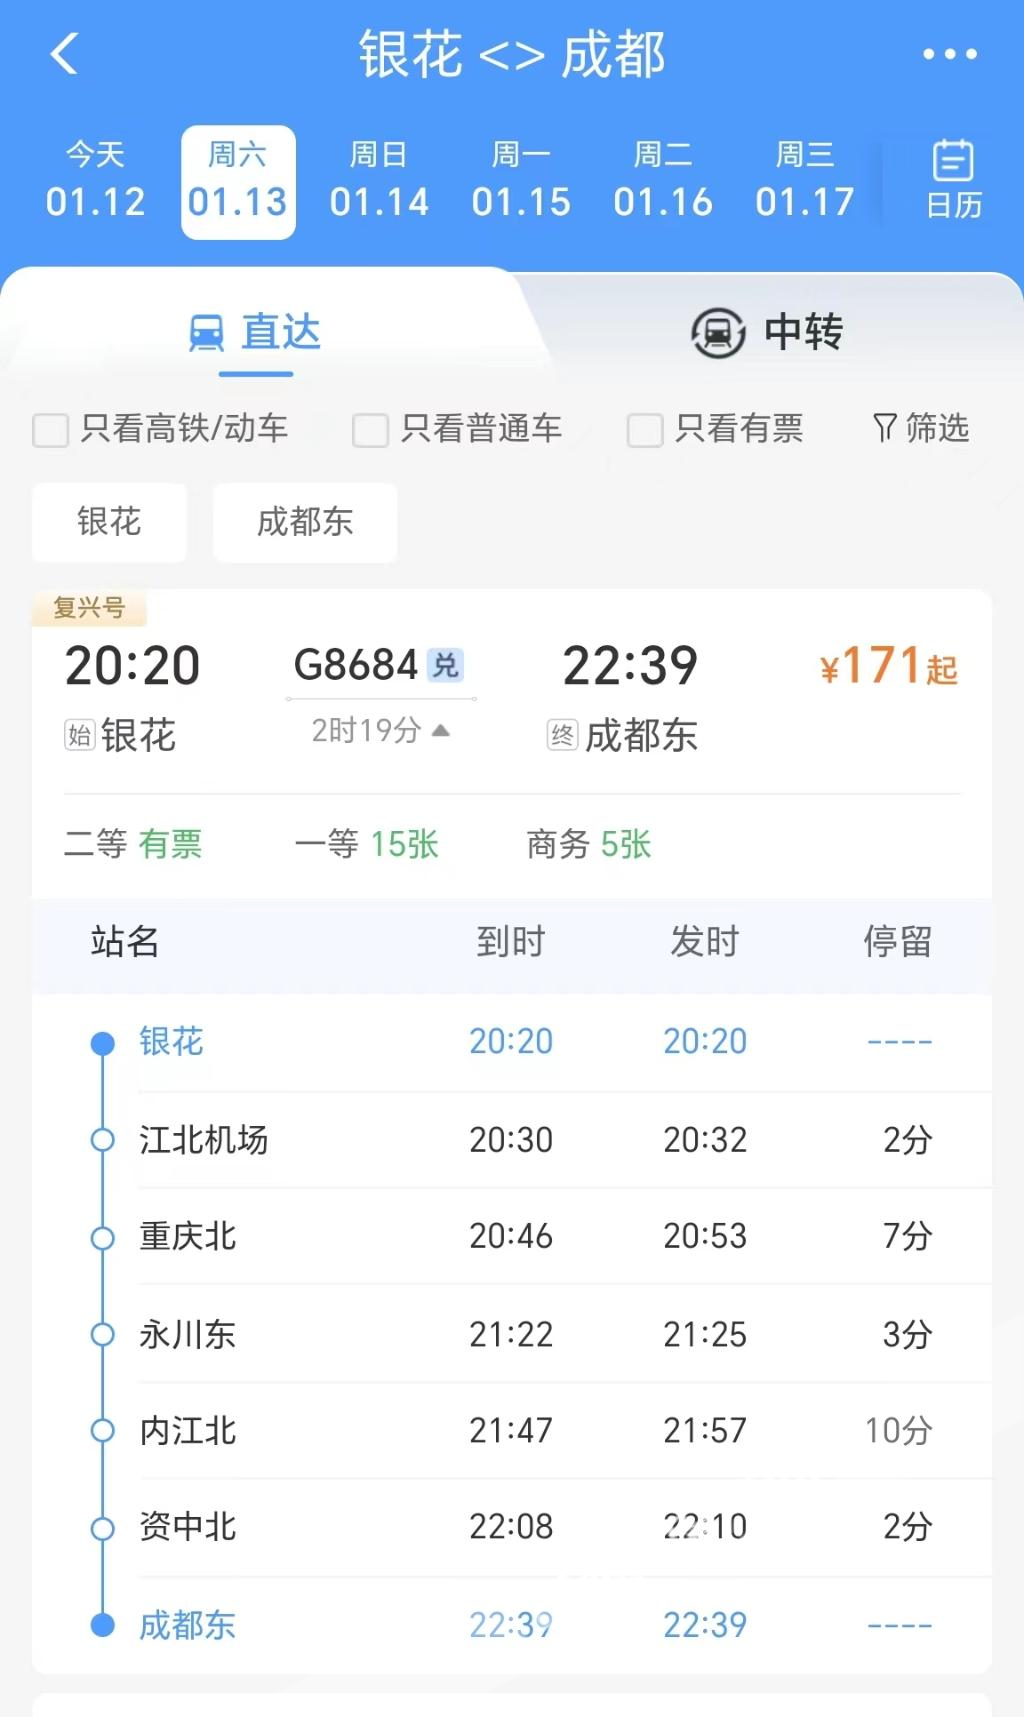 02——银花站直达重庆东站。